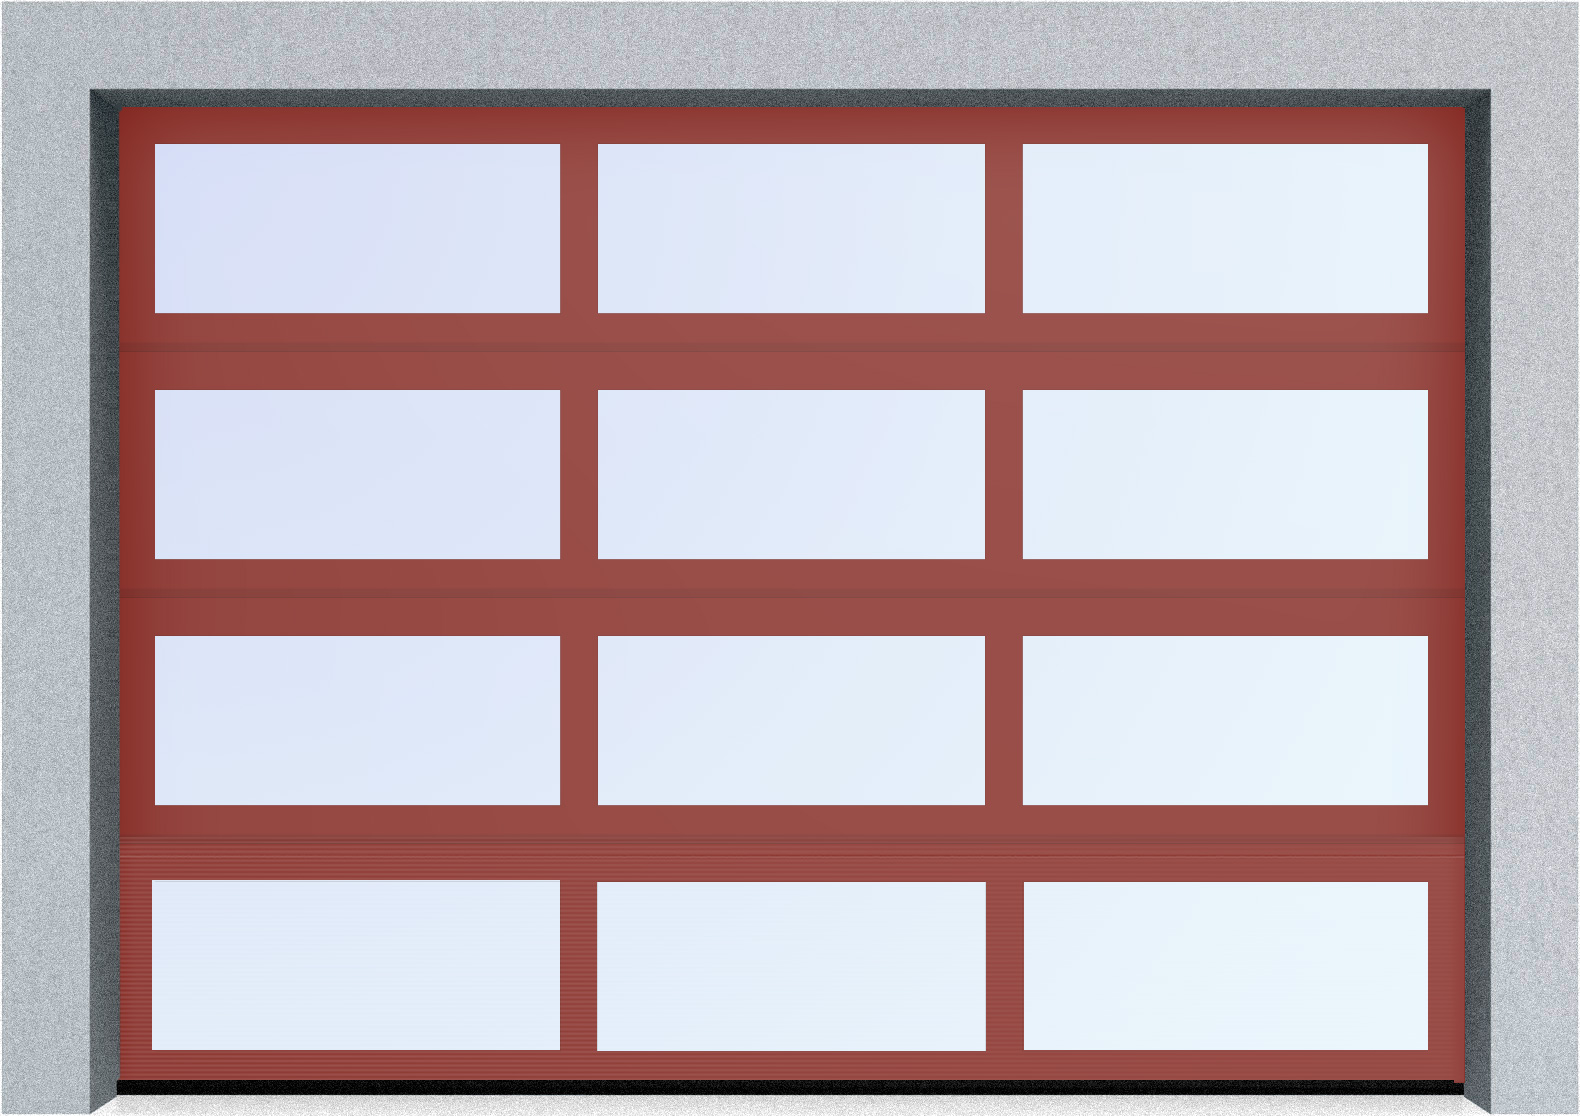  Секционные панорамные ворота серии AluTrend (АЛП) 2375х2500 нижняя панель стандартные цвета, фото 2 